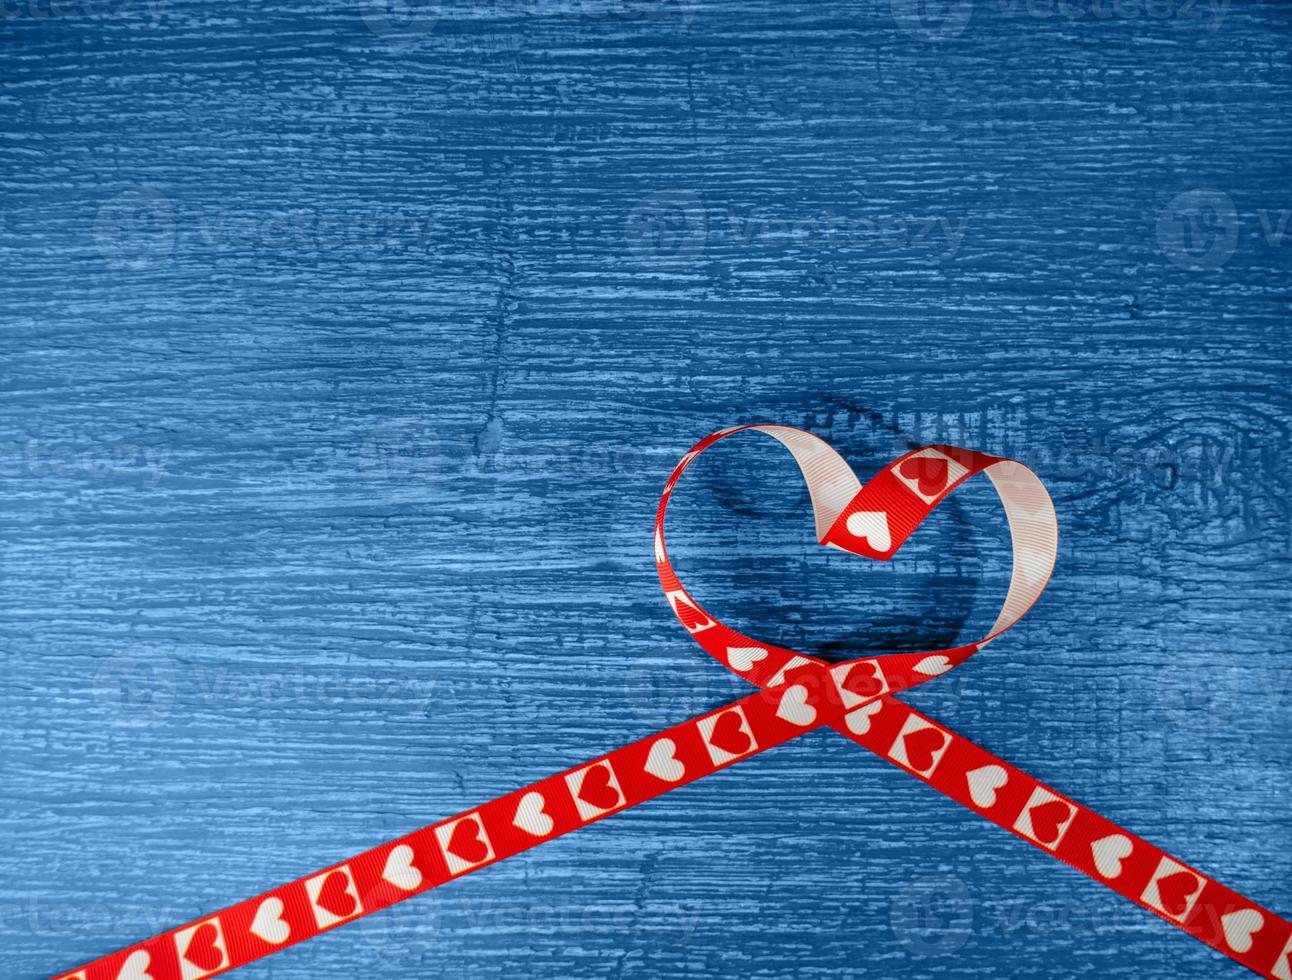 cinta roja en forma de corazón sobre un fondo azul de madera antiguo. símbolo de amor foto